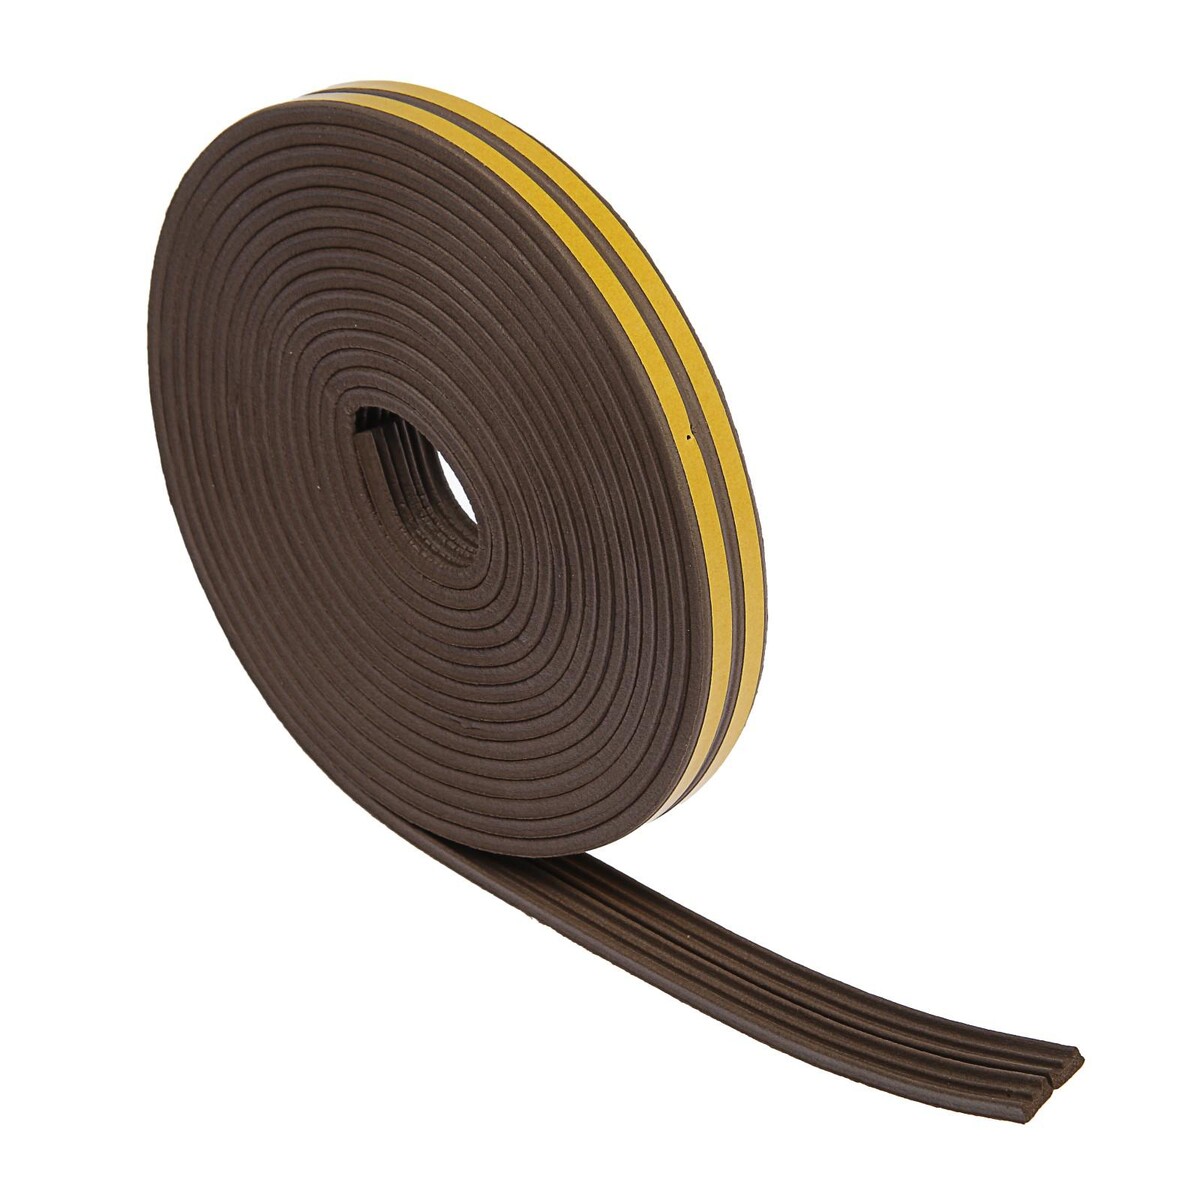 Уплотнитель резиновый тундра krep, профиль е, размер 4х9 мм, коричневый, в упаковке 10 м. медбол резиновый 7 кг bronze gym bg fa mb7